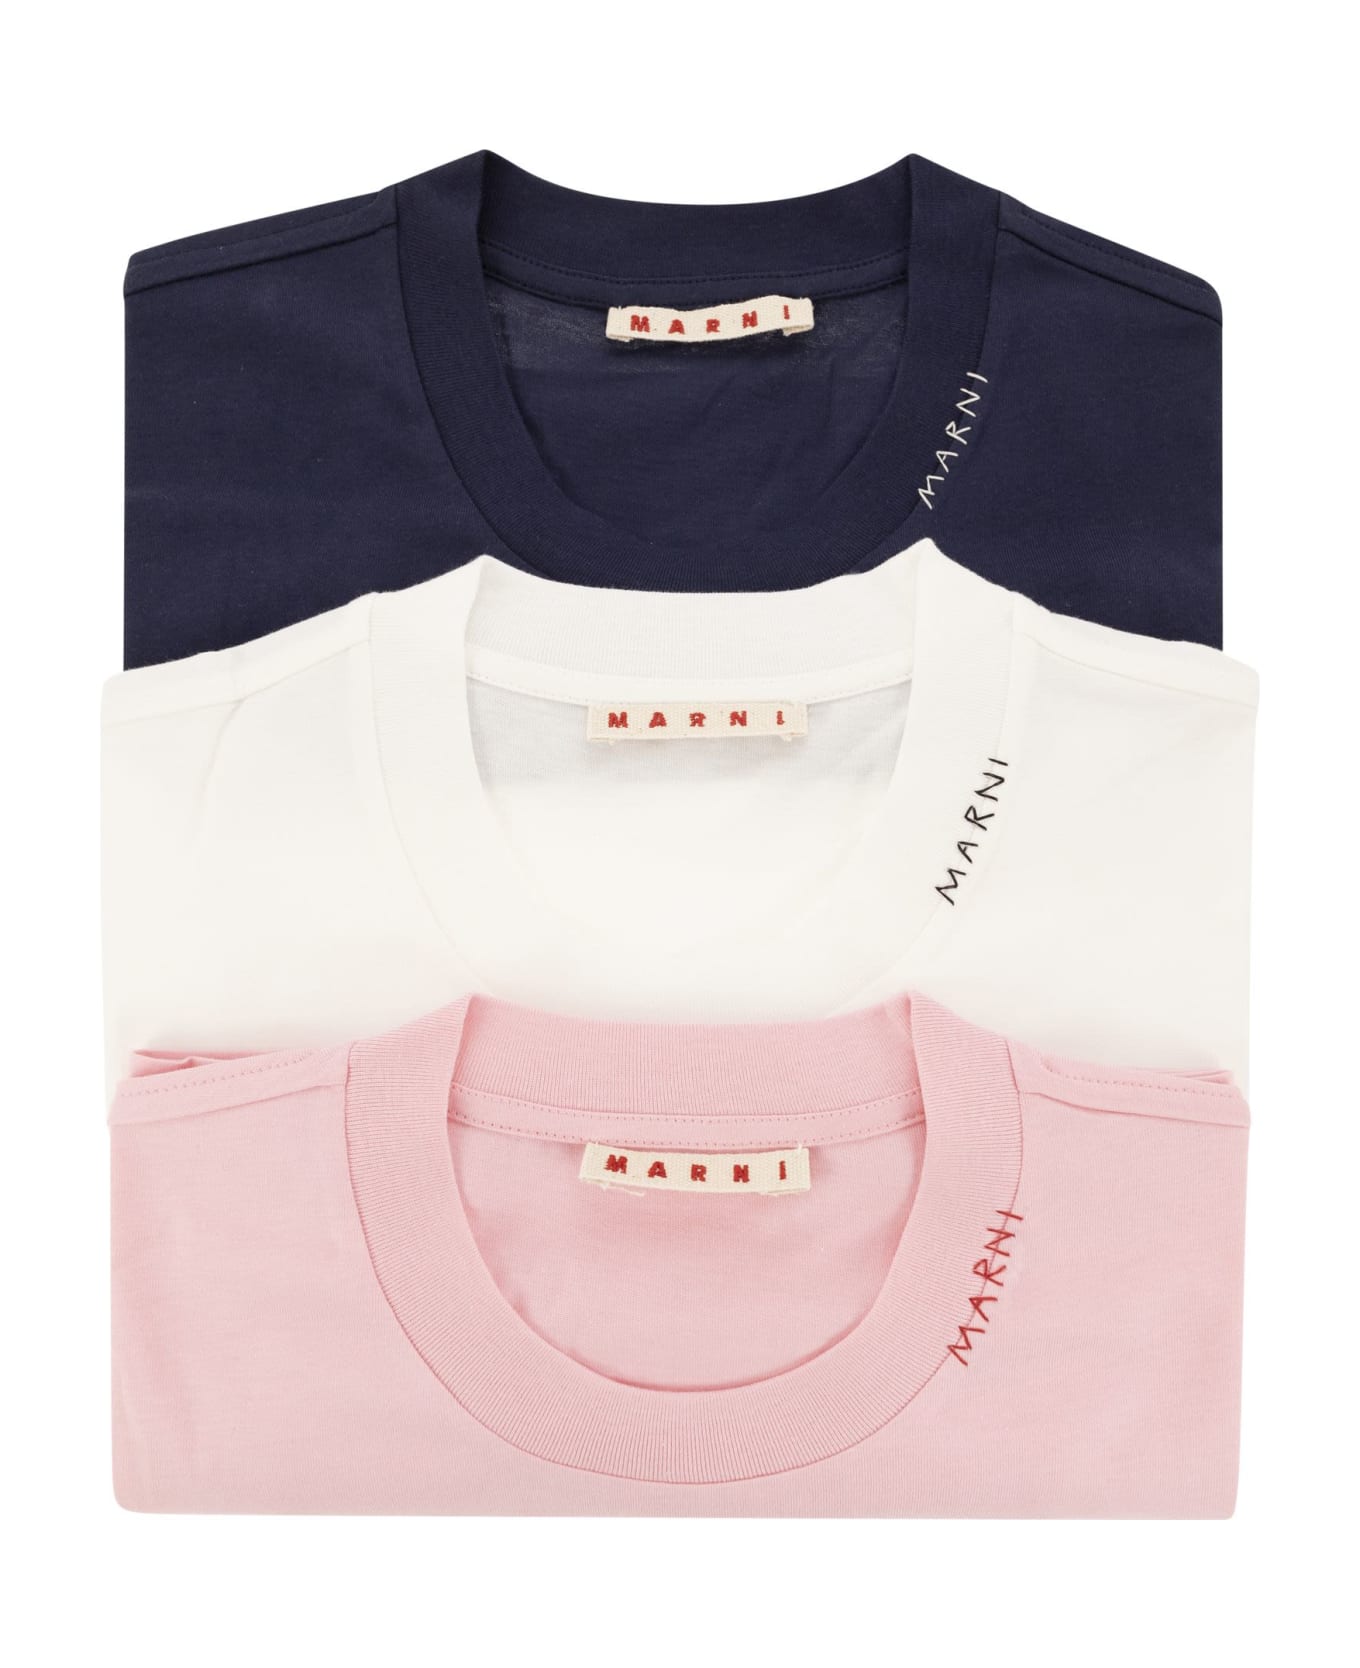 Marni Set Of 3 Cotton T-shirts - Pink/white/blue